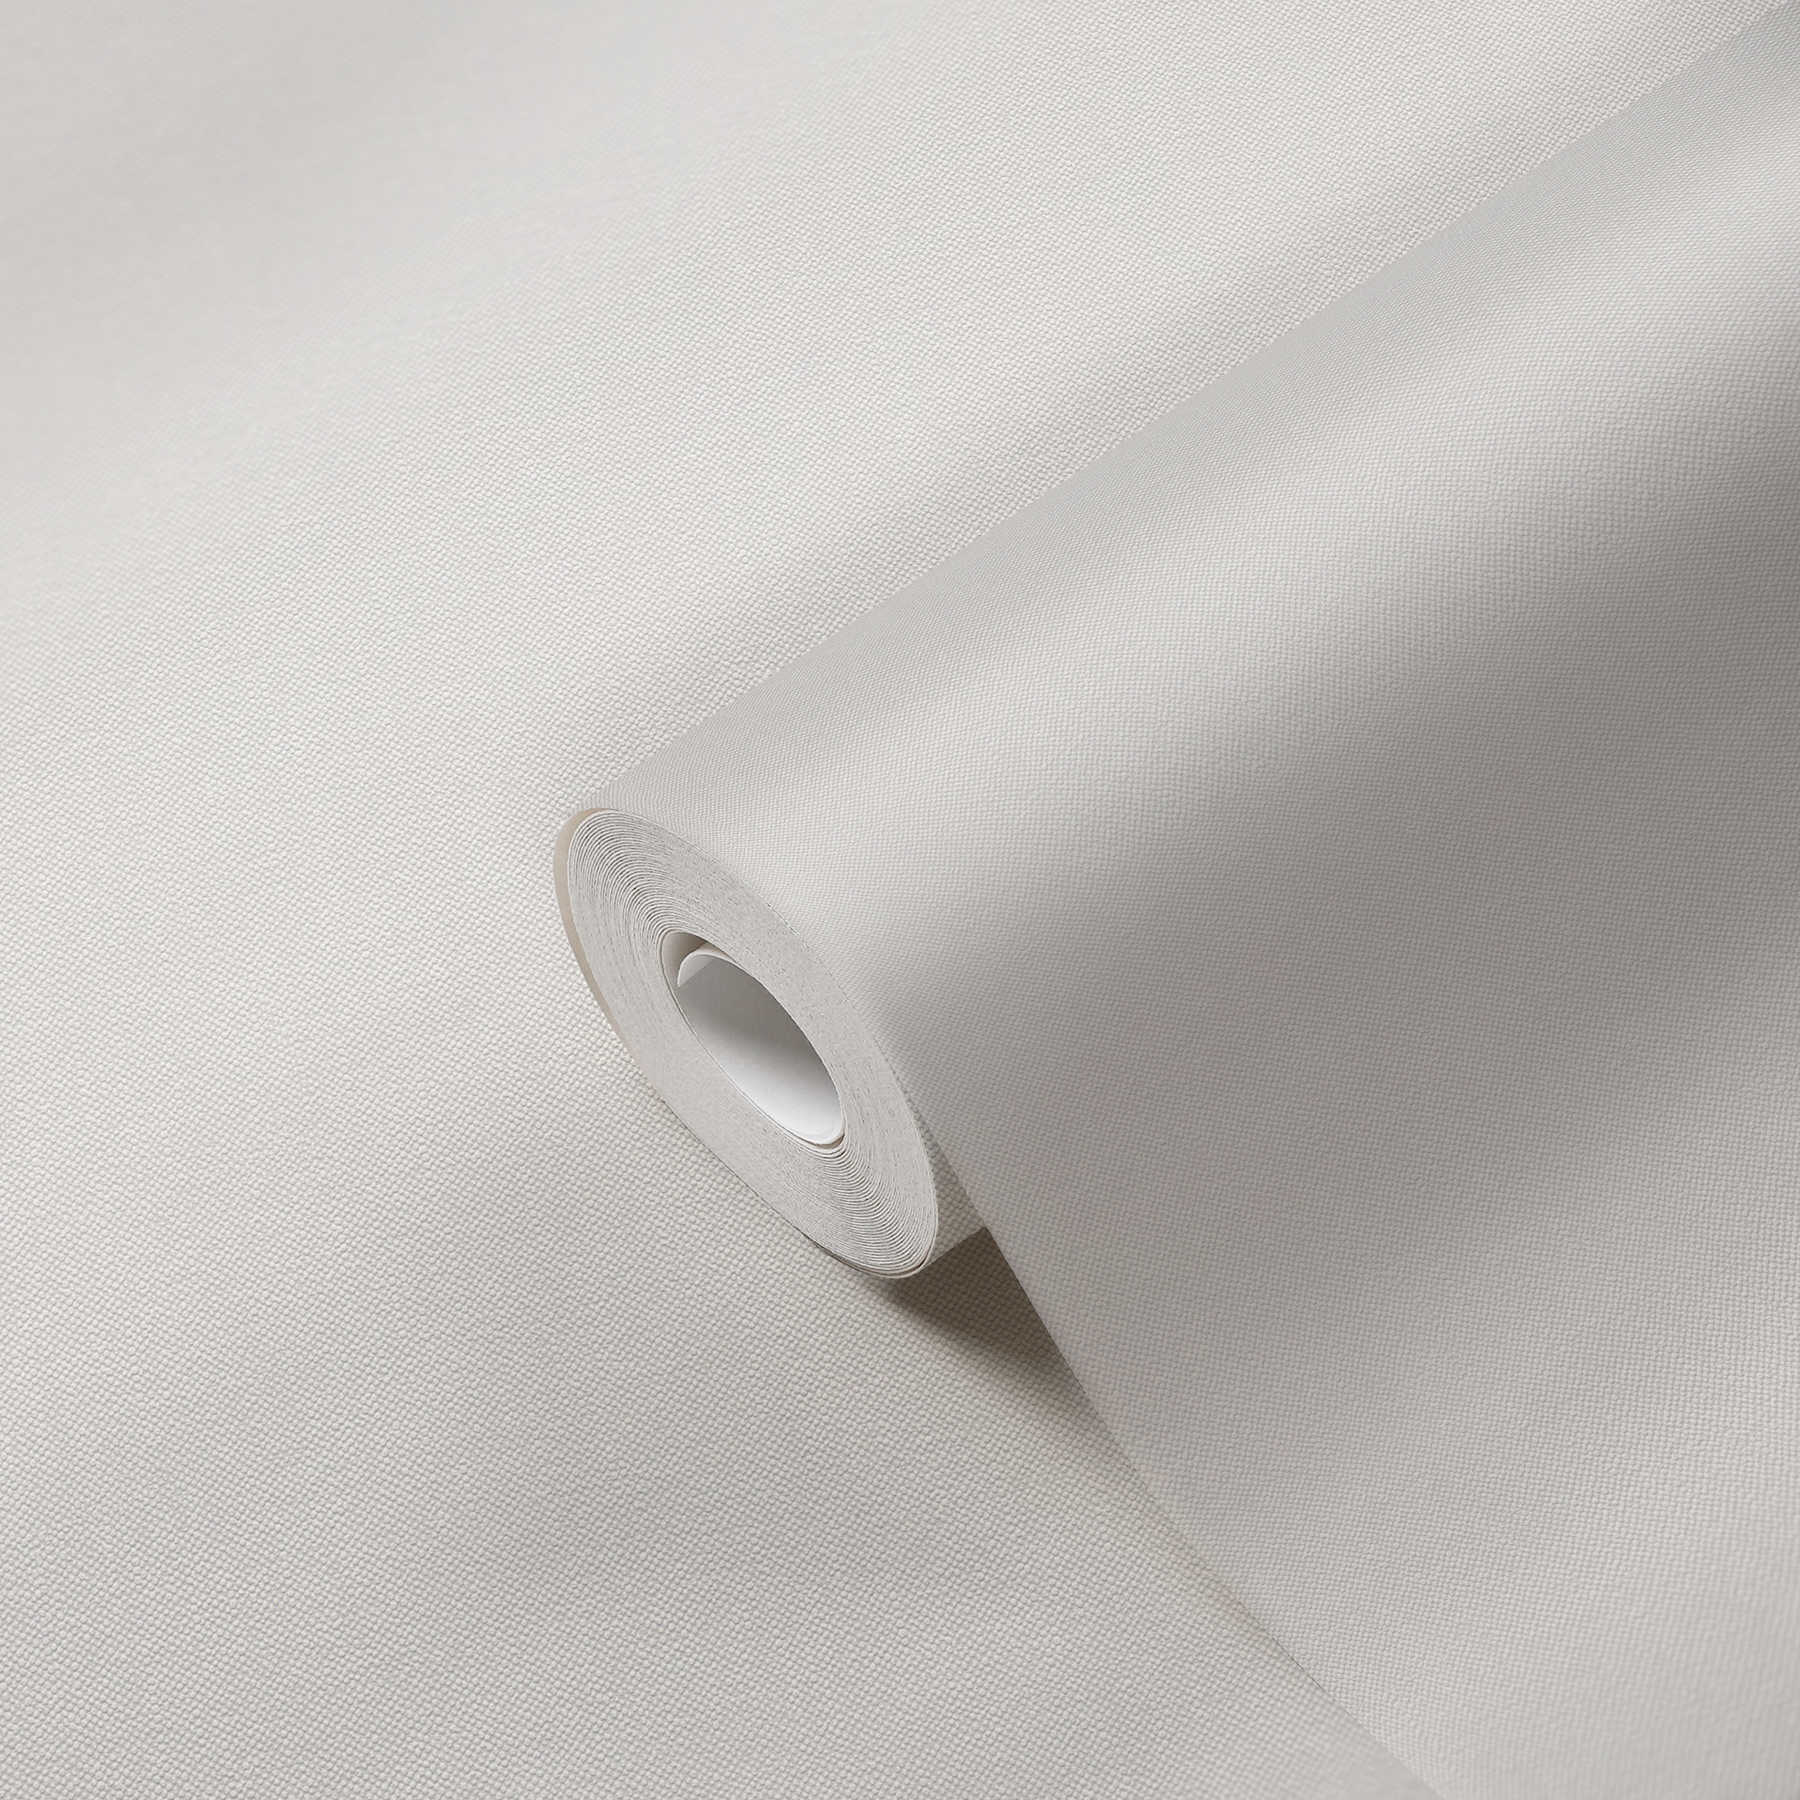             Papier peint imitation lin crème avec structure textile
        